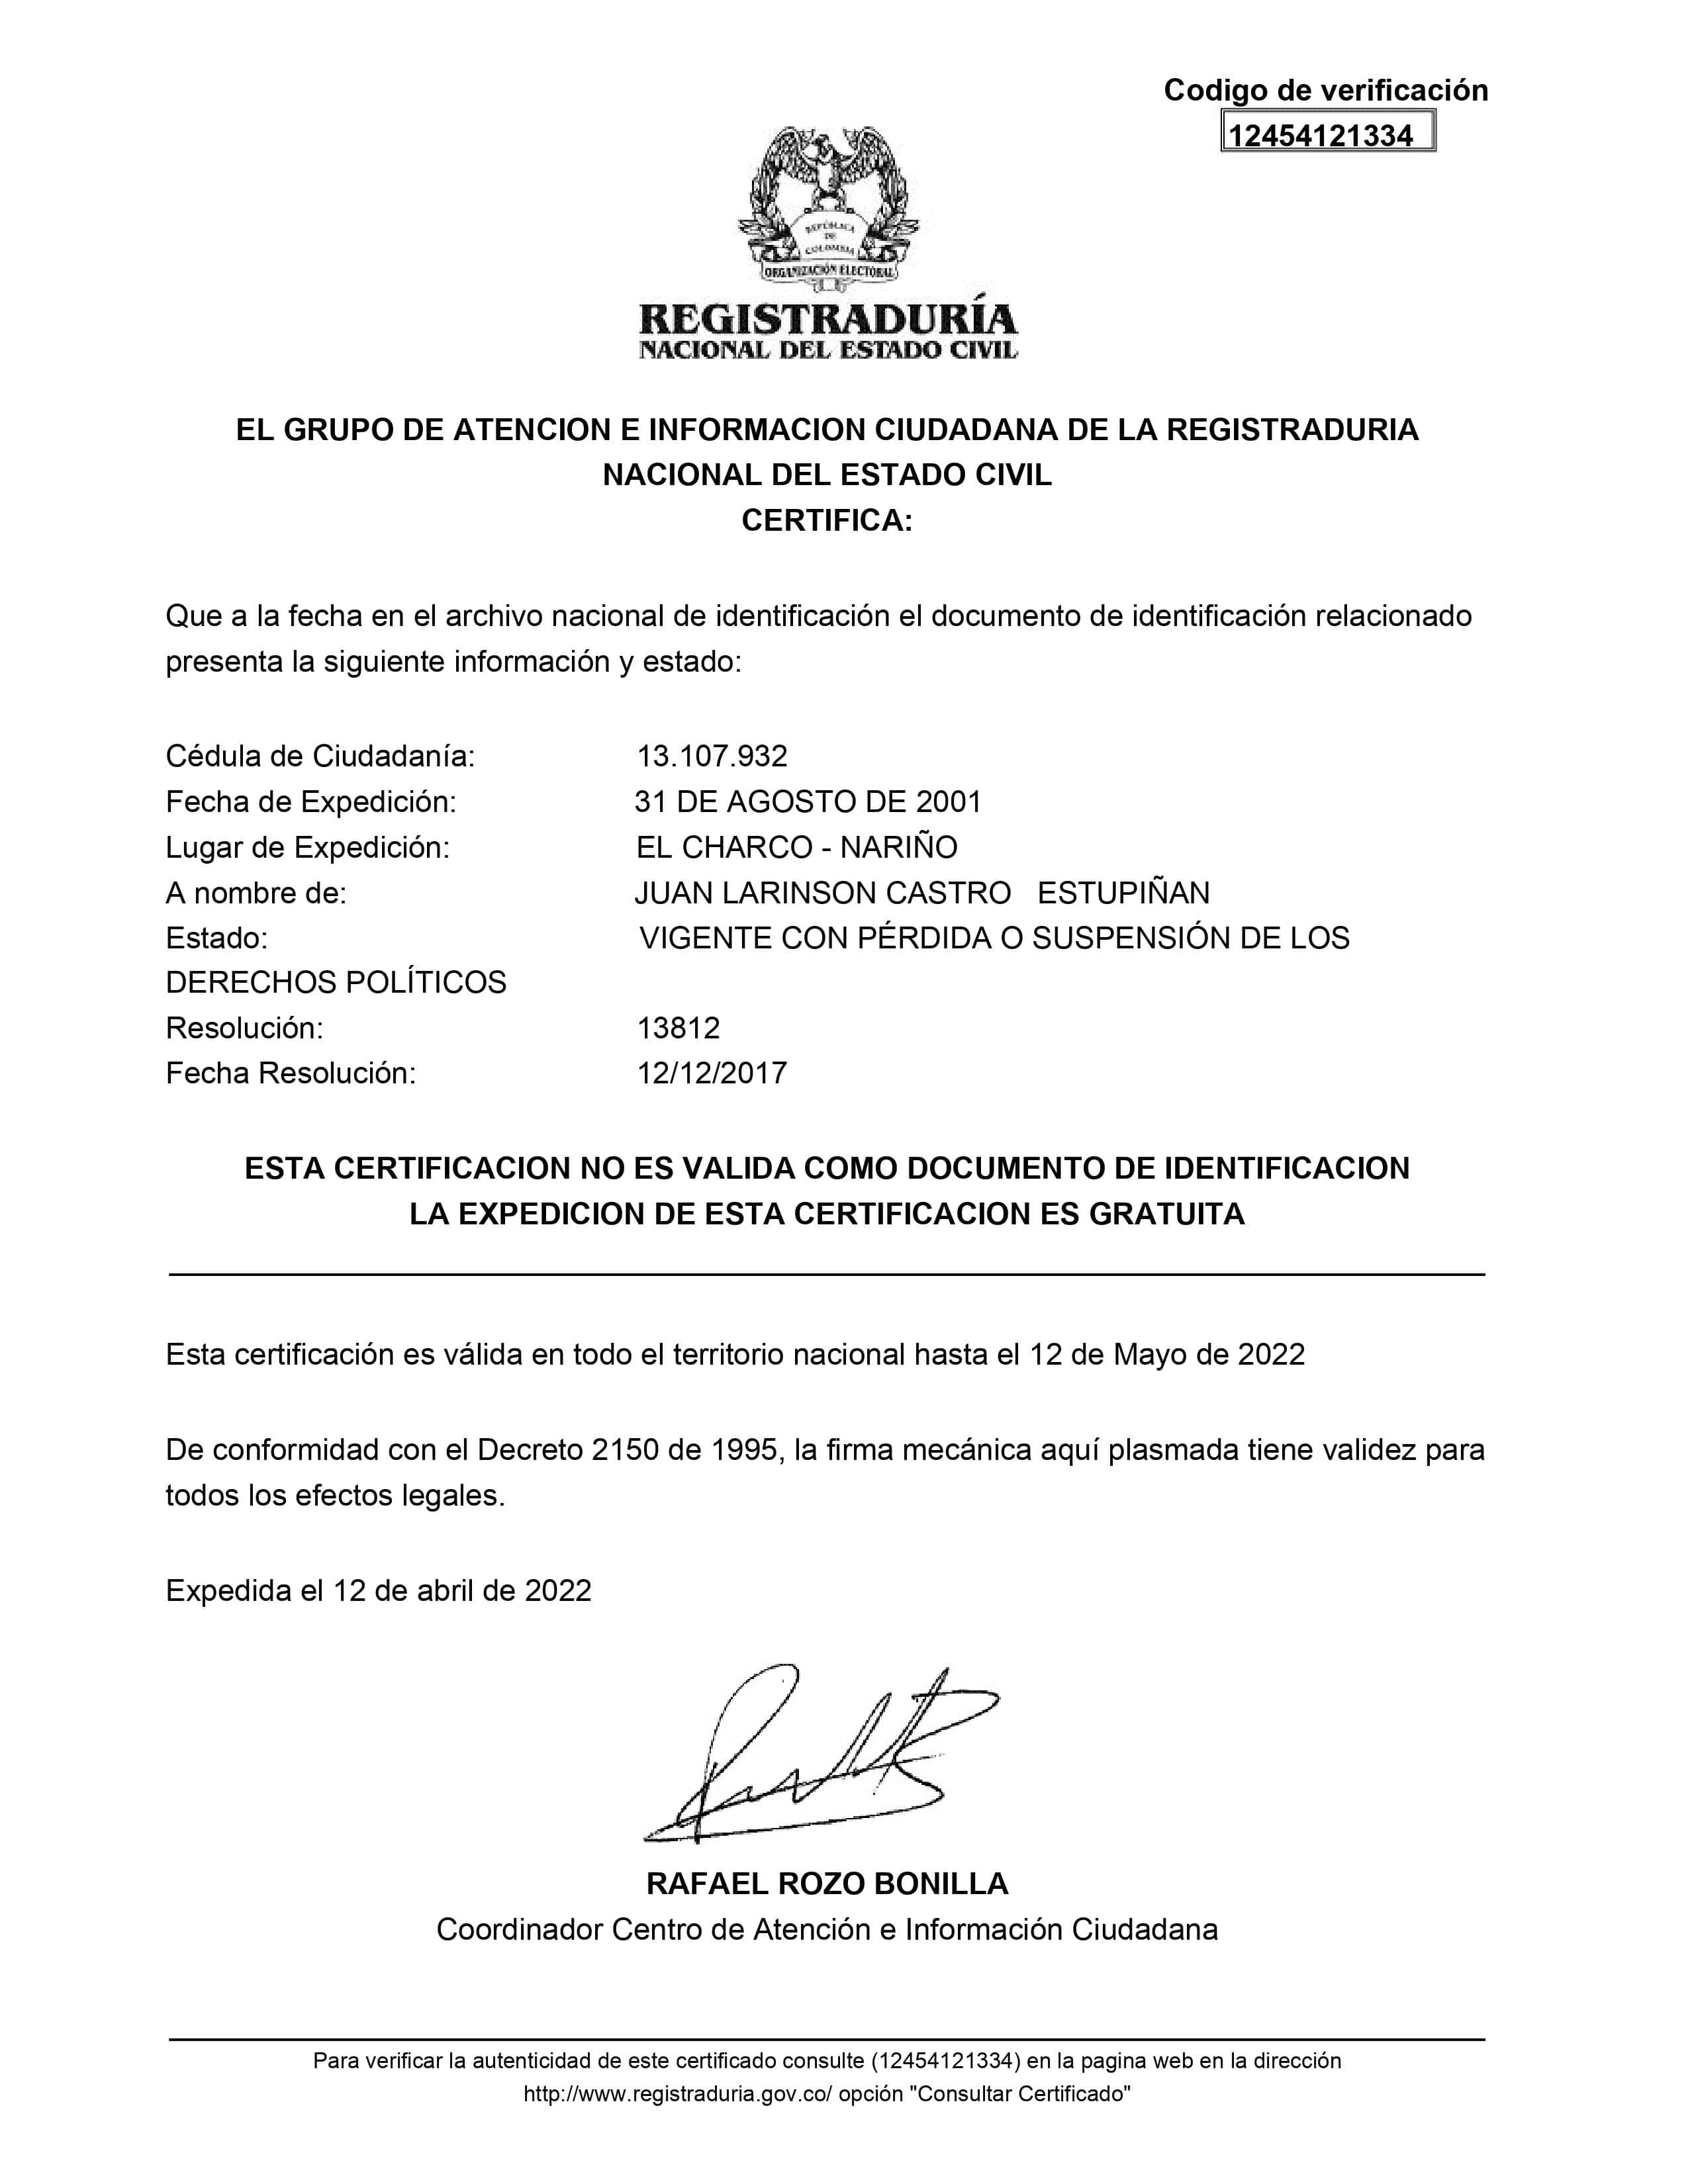 Certificación de la Registraduría sobre Matamba